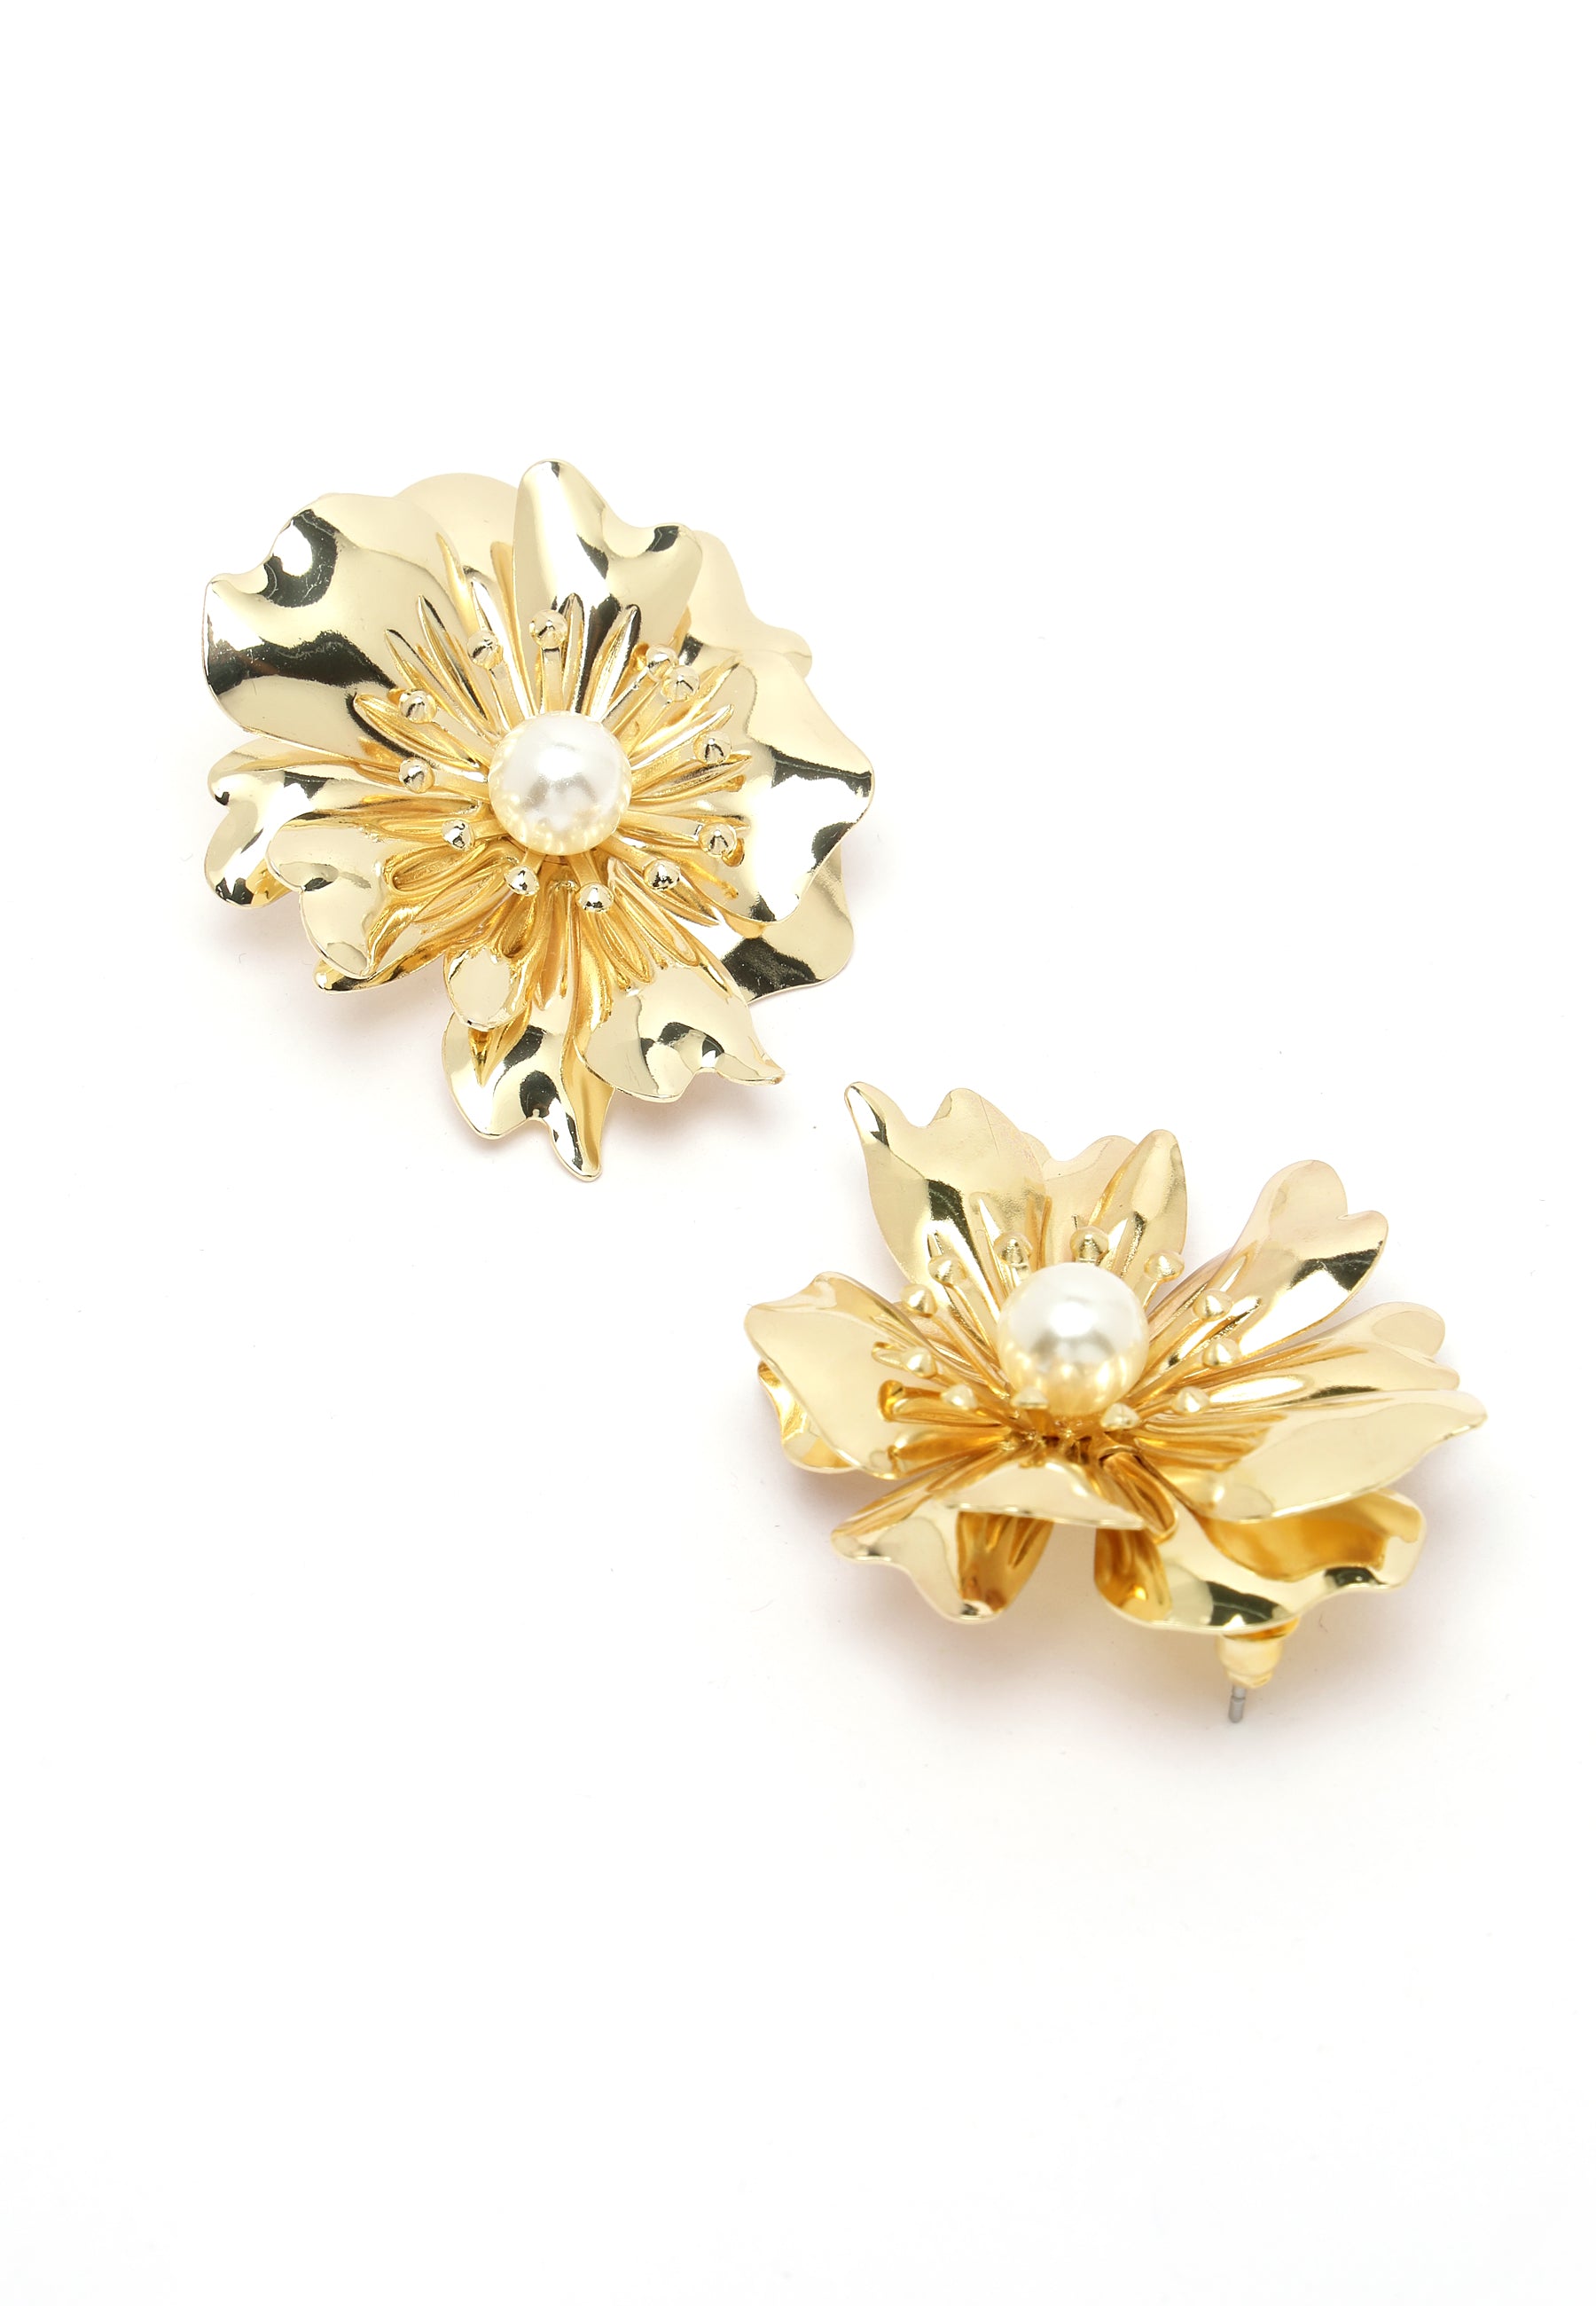 Kolczyki sztyfty w kolorze starego złota z perłami i perłami